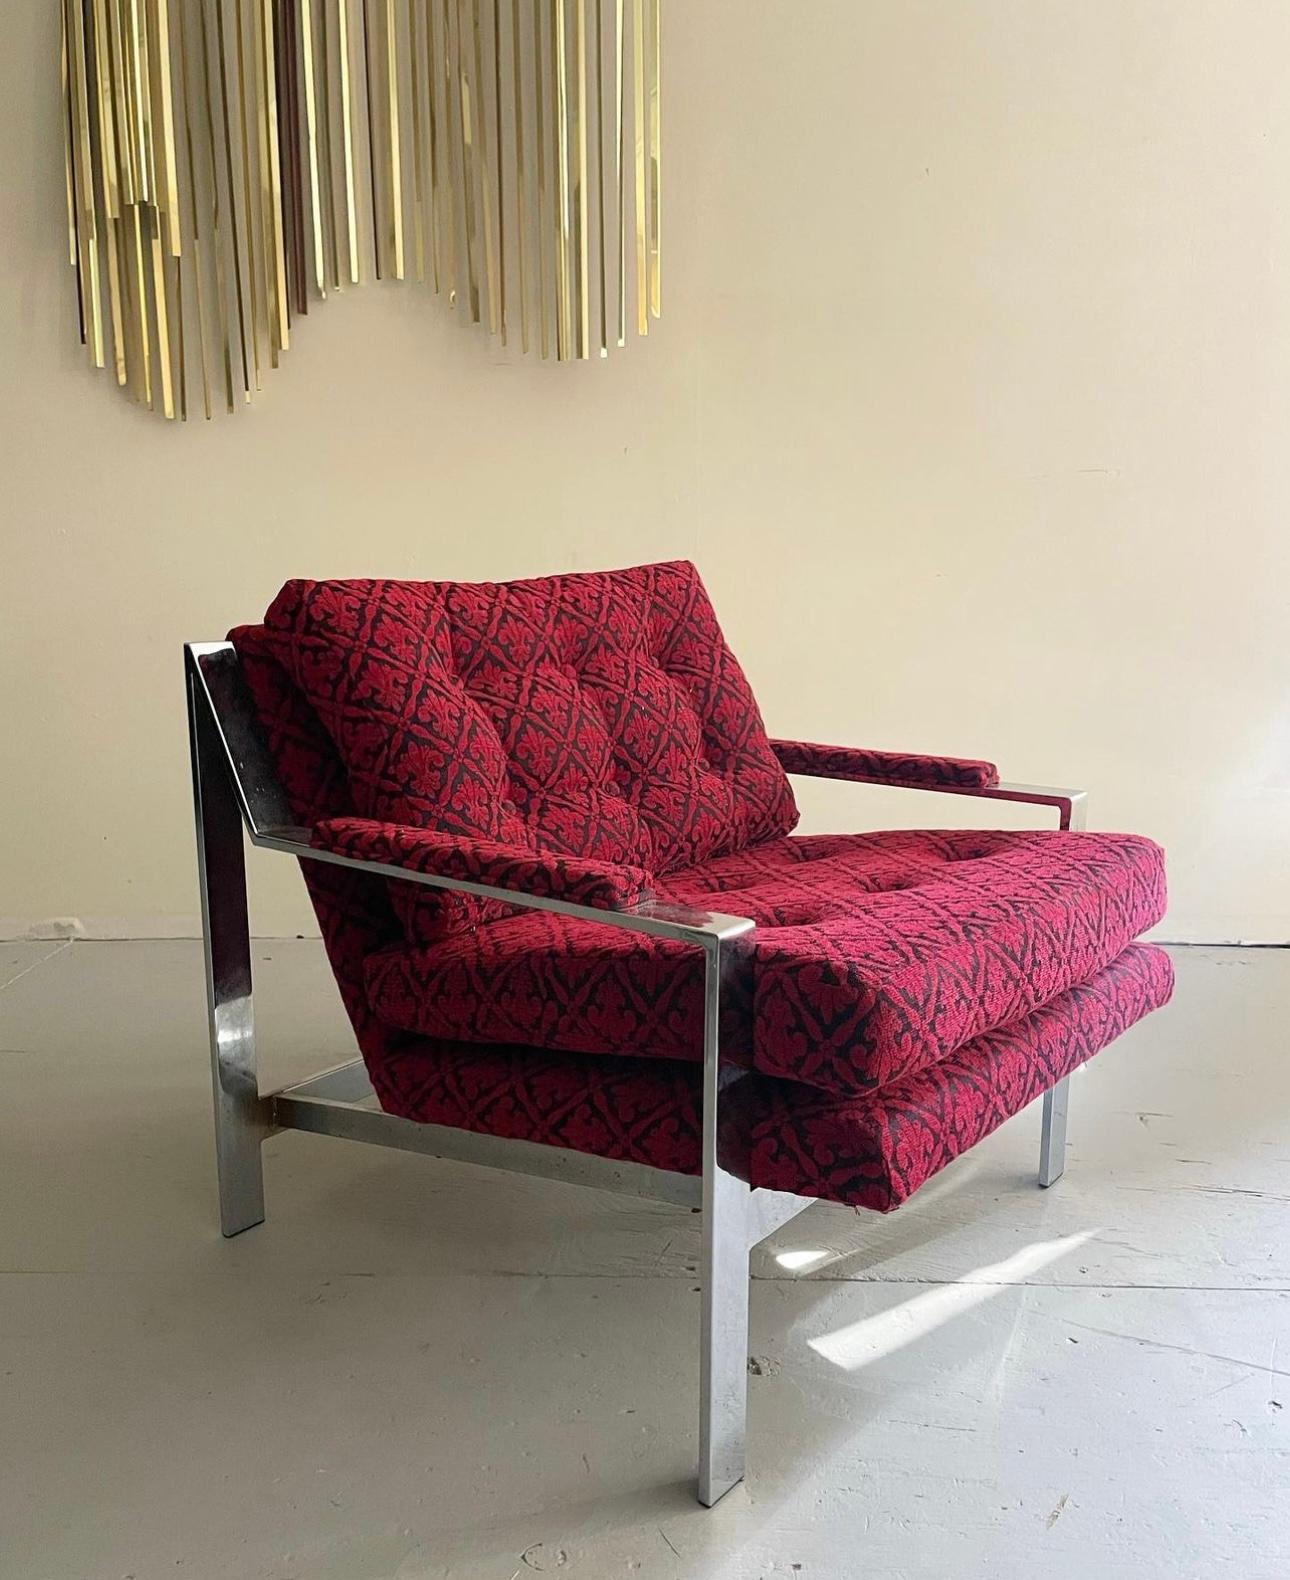 Chaise longue cubique en chrome de style moderne du milieu du siècle, conçue par Cy Mann. Ces chaises sont dotées d'une finition chromée réfléchissante et d'un rembourrage et d'une mousse géométriques uniques et inédits. Conçu par Cy Mann vers 1960.